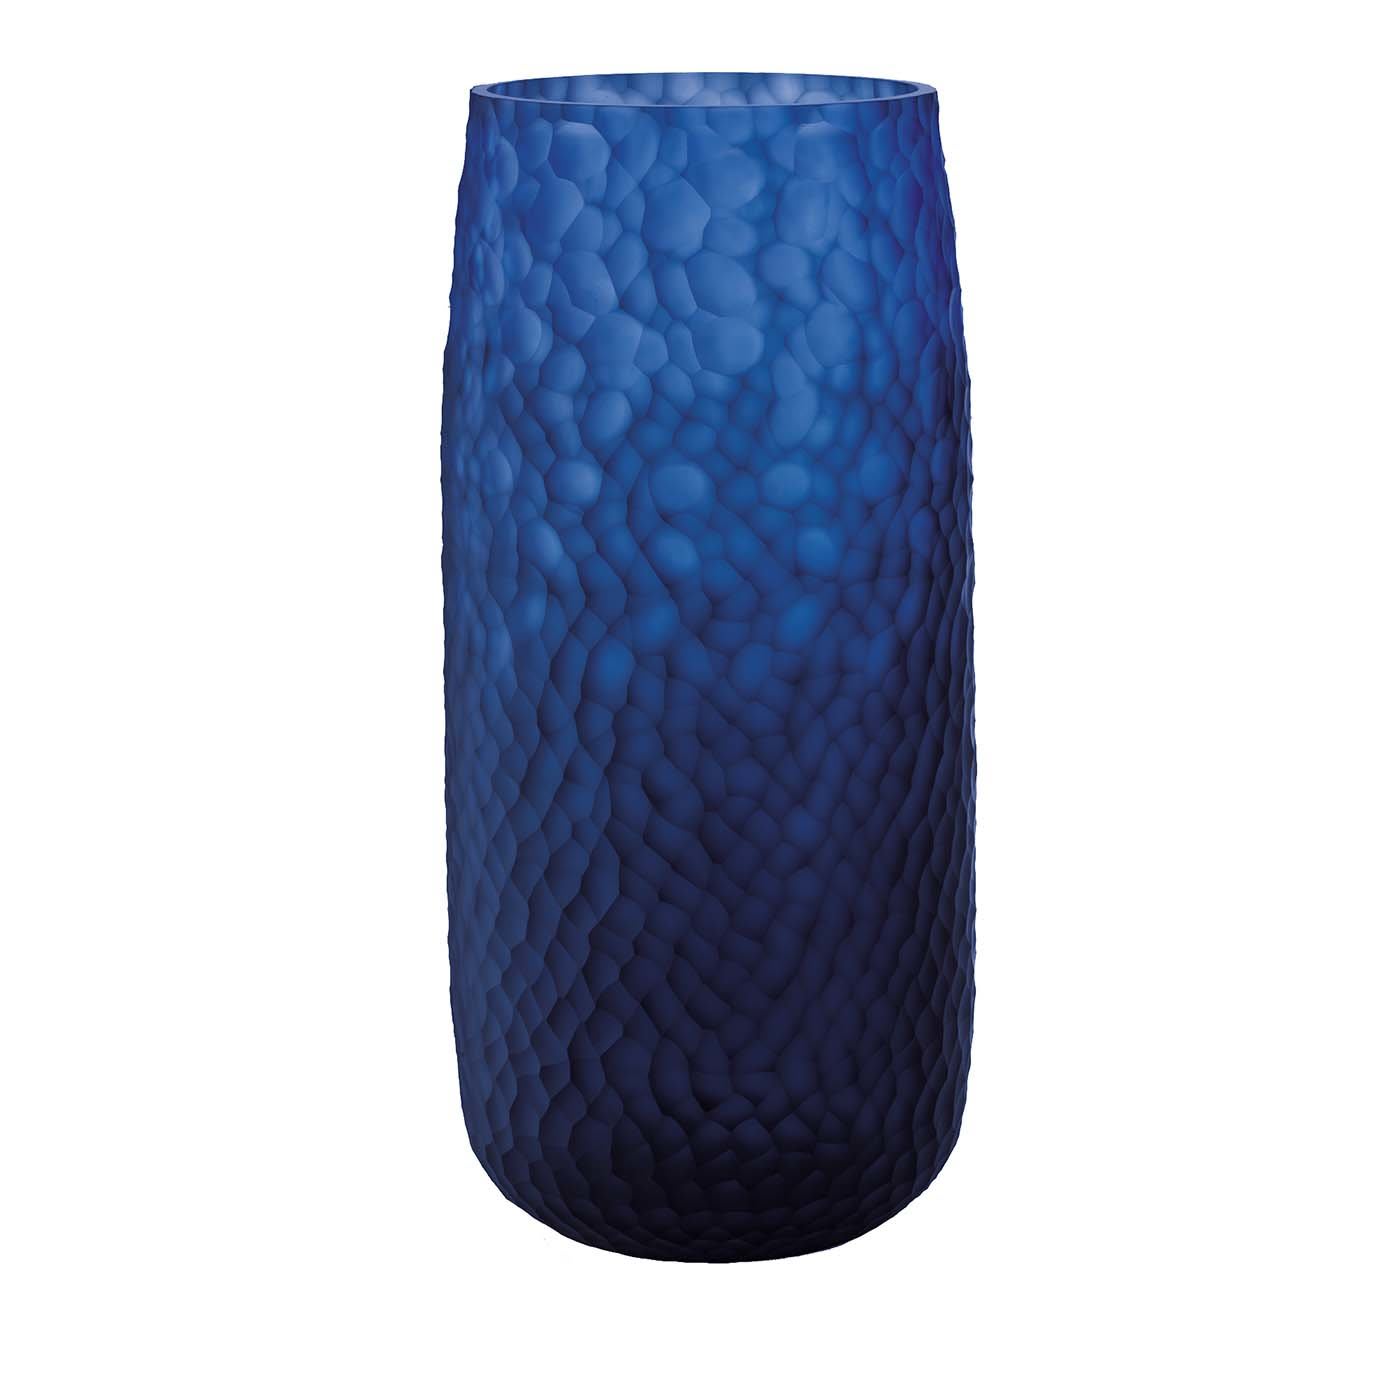 Battuti Medium Blue Vase - Salviati